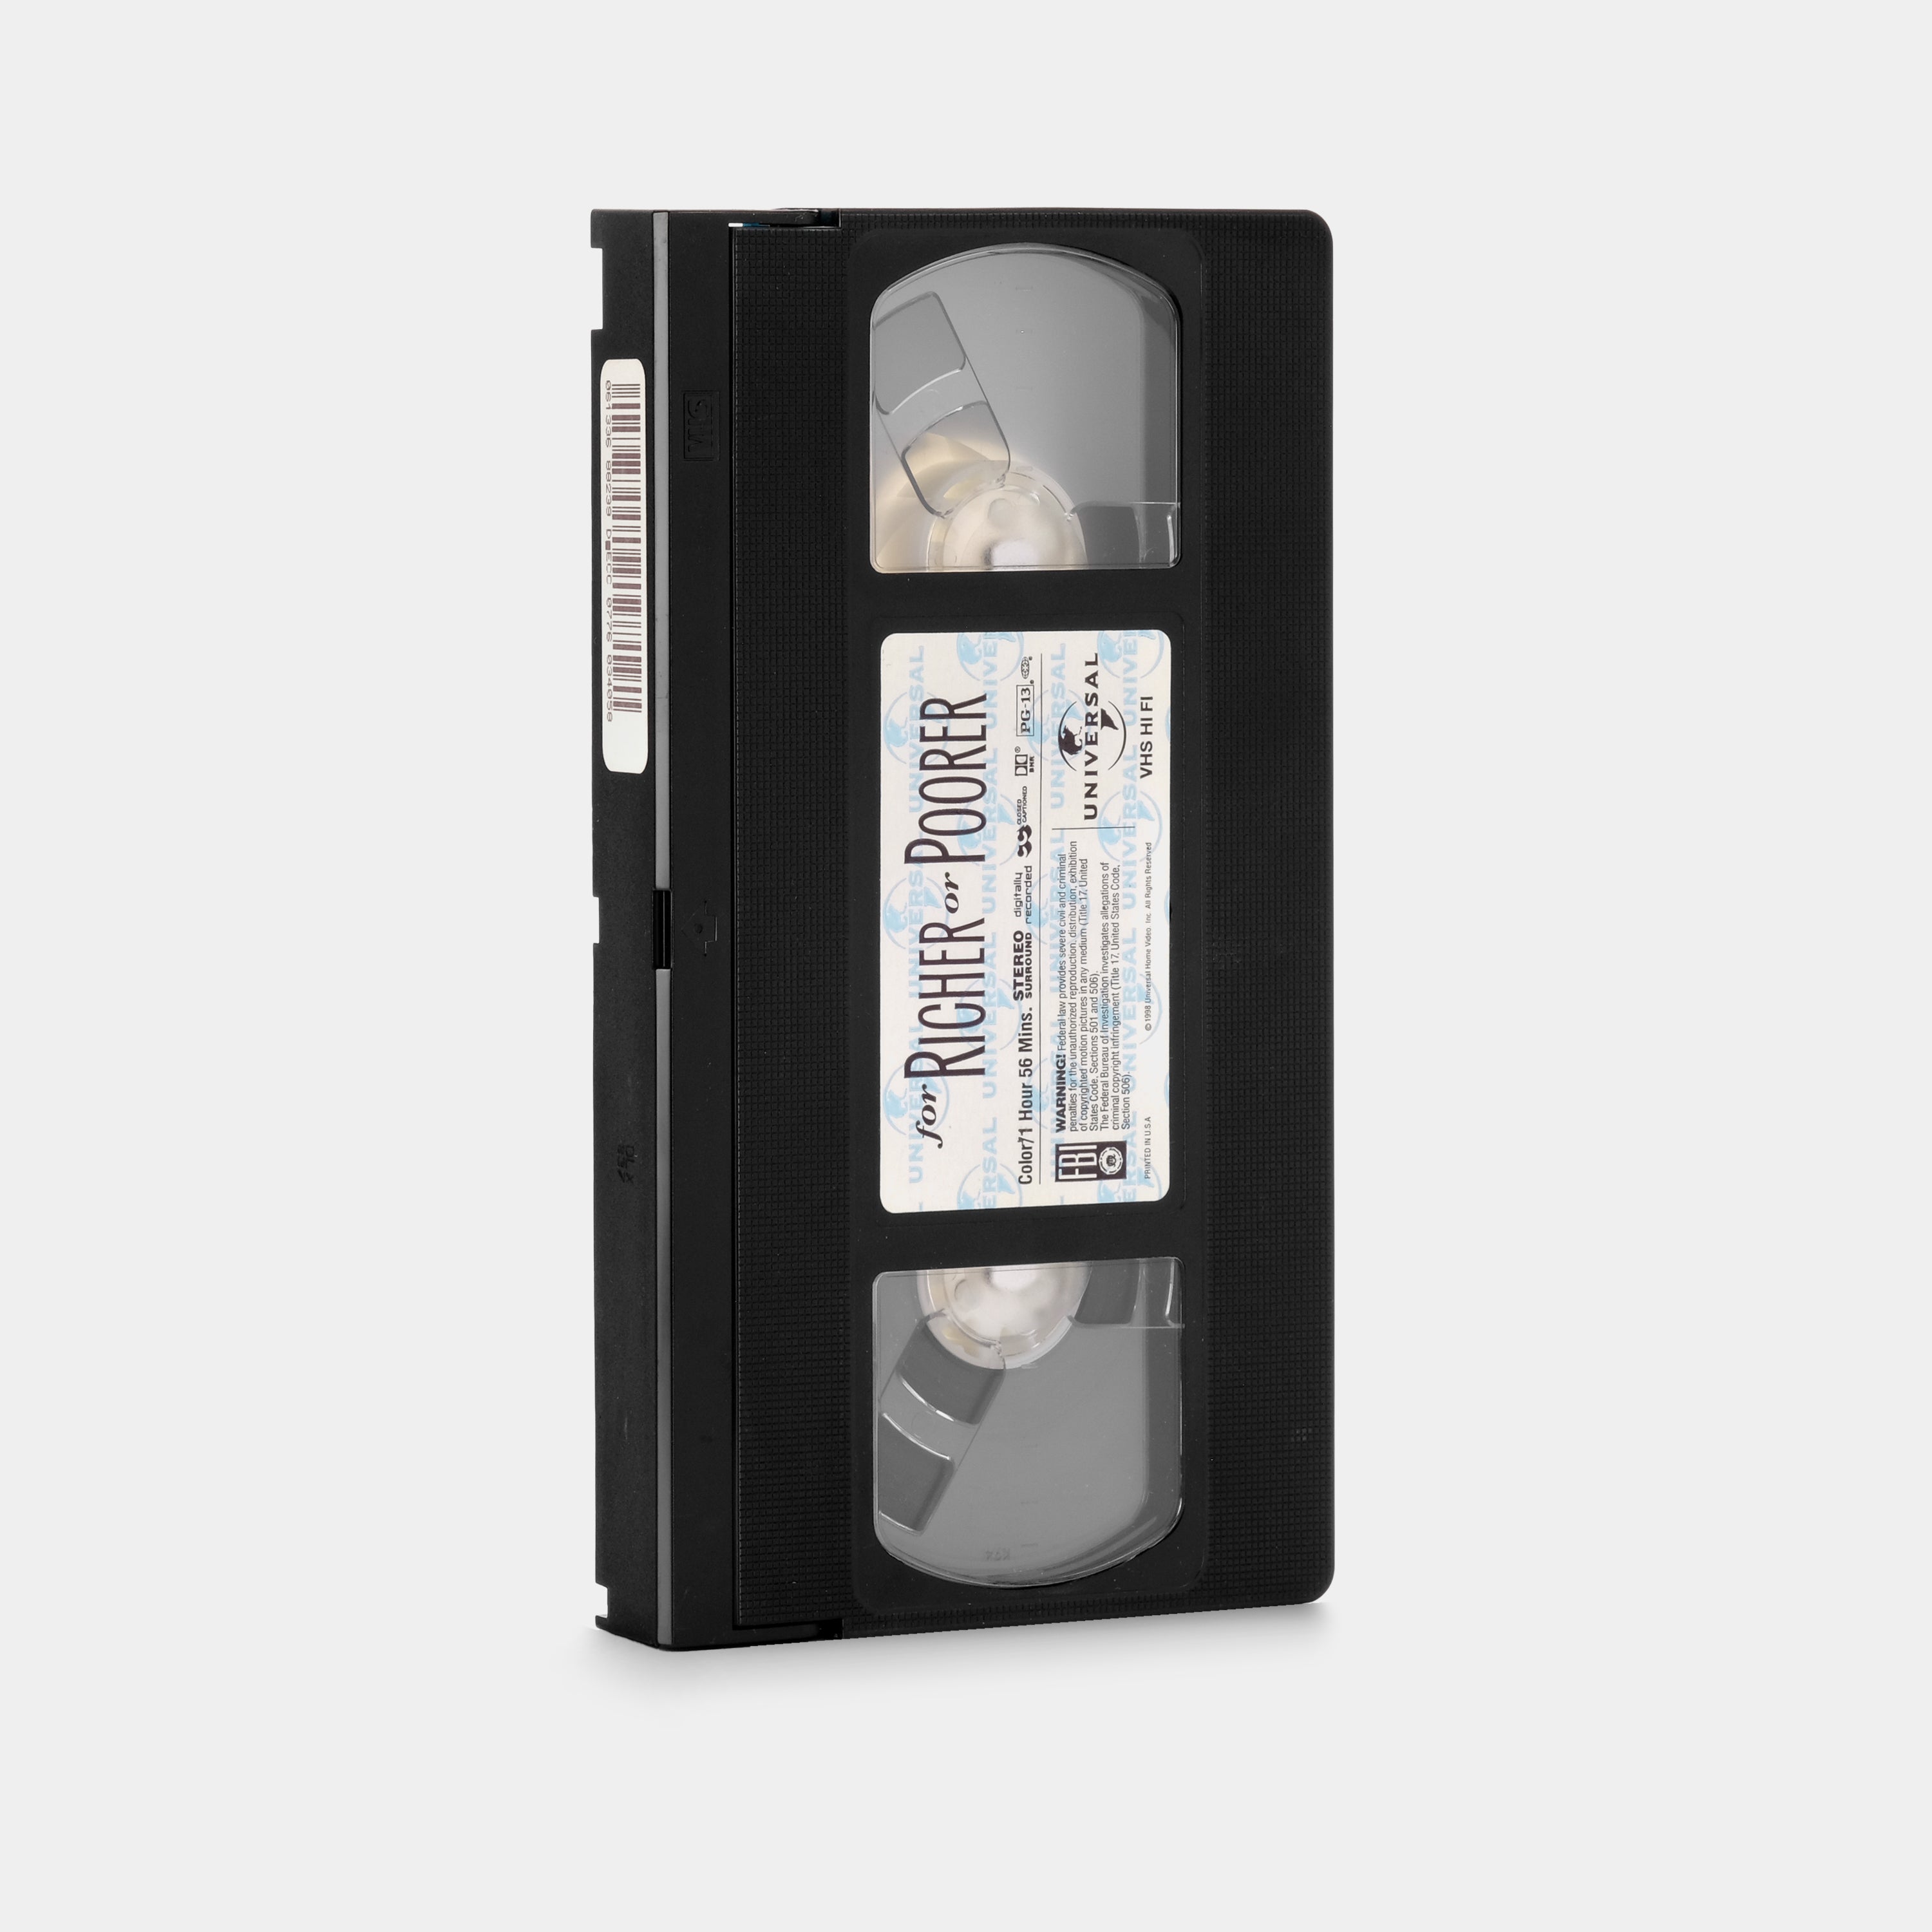 For Richer or Poorer VHS Tape